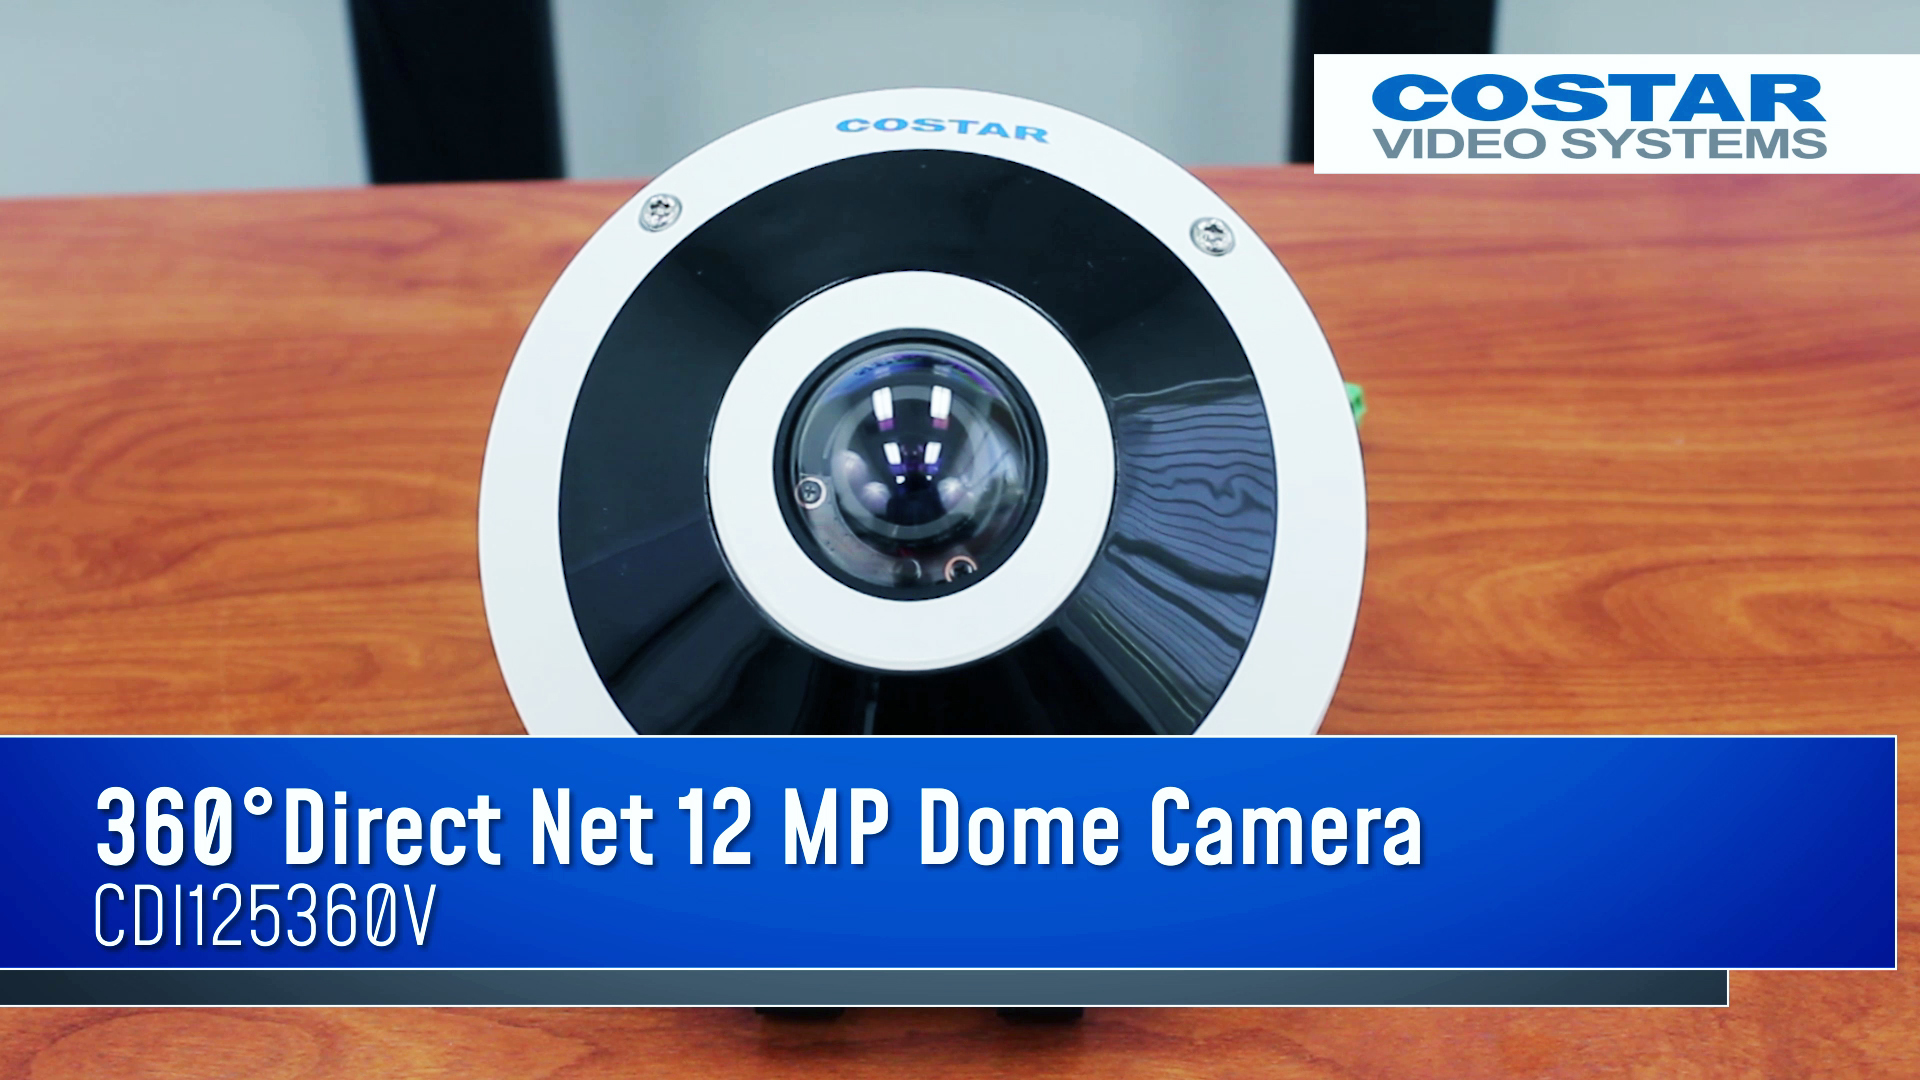 07.17 - 9.6 MP Net Dome Camera - MP4